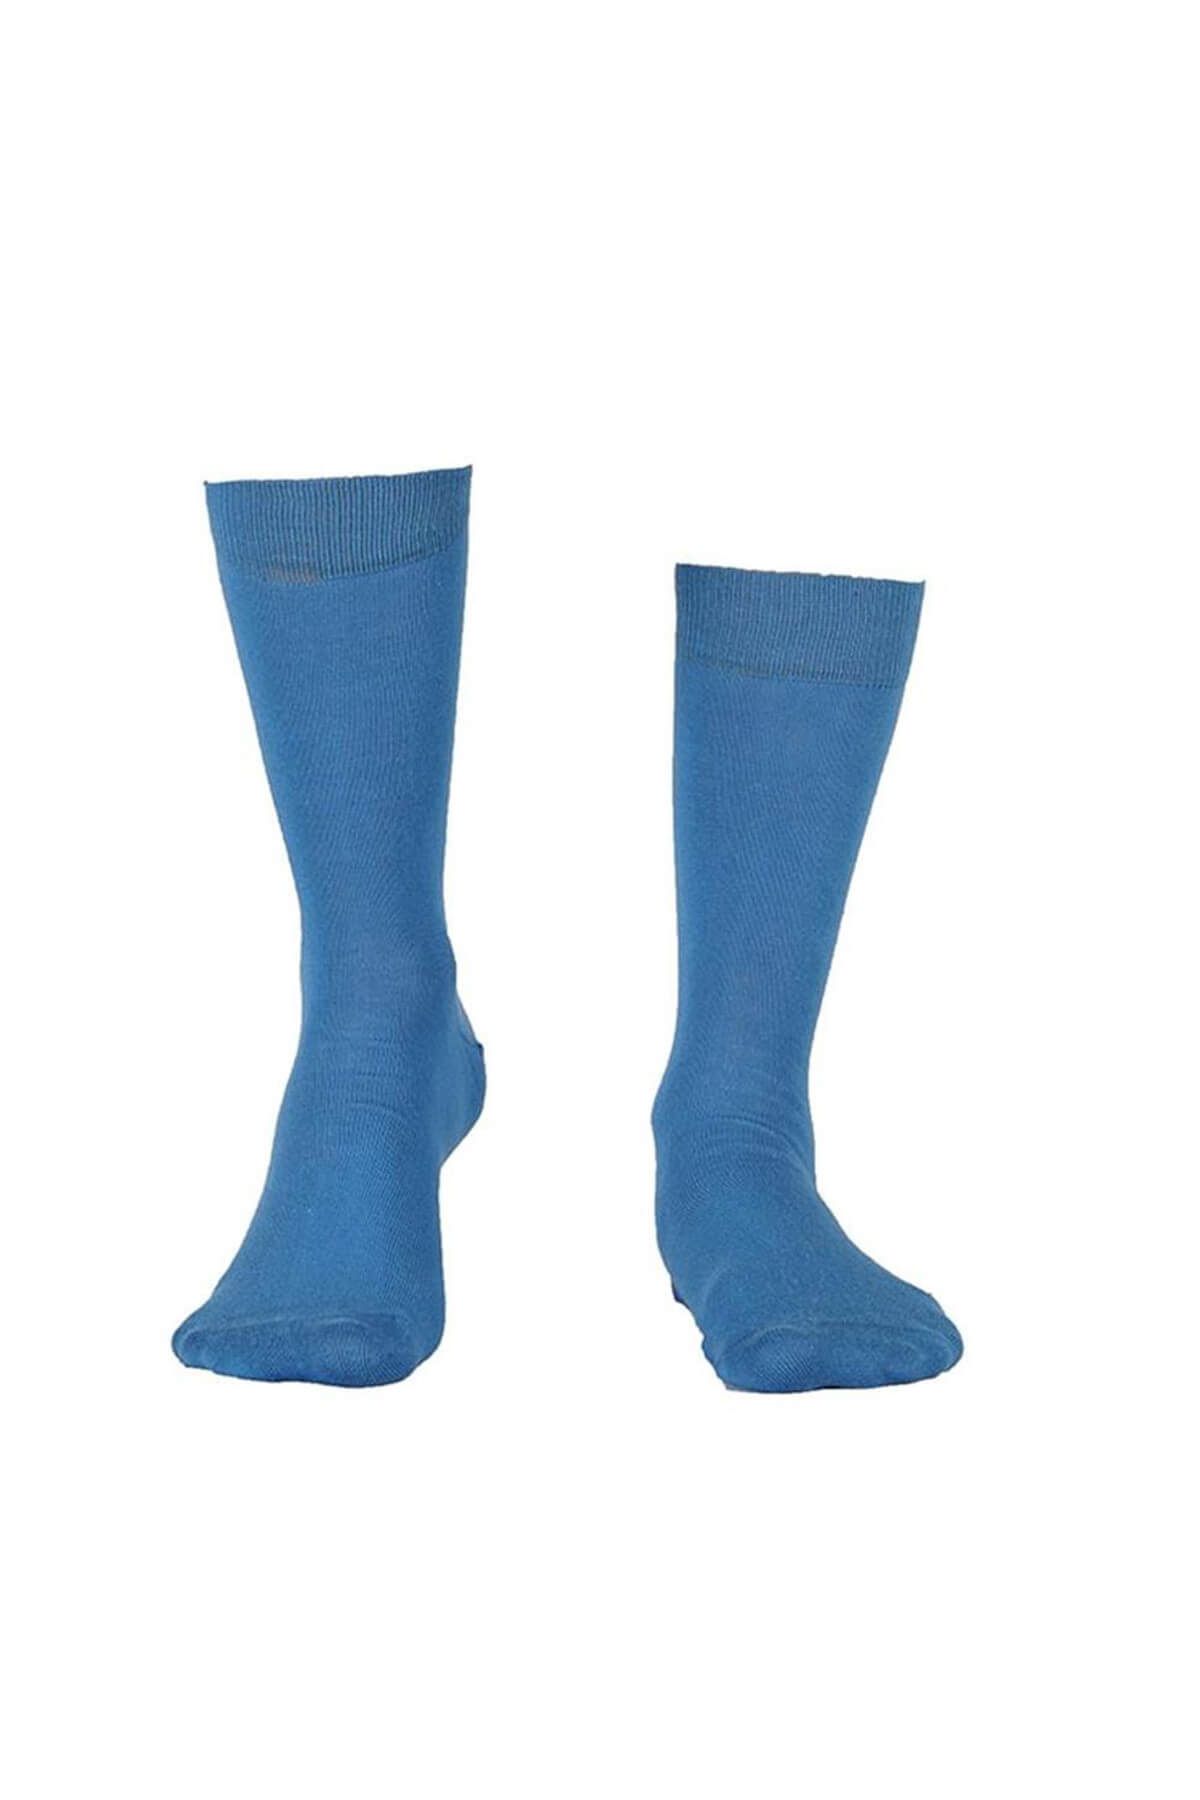 Özgür Çoraplar Havacı Mavi Erkek Çorap